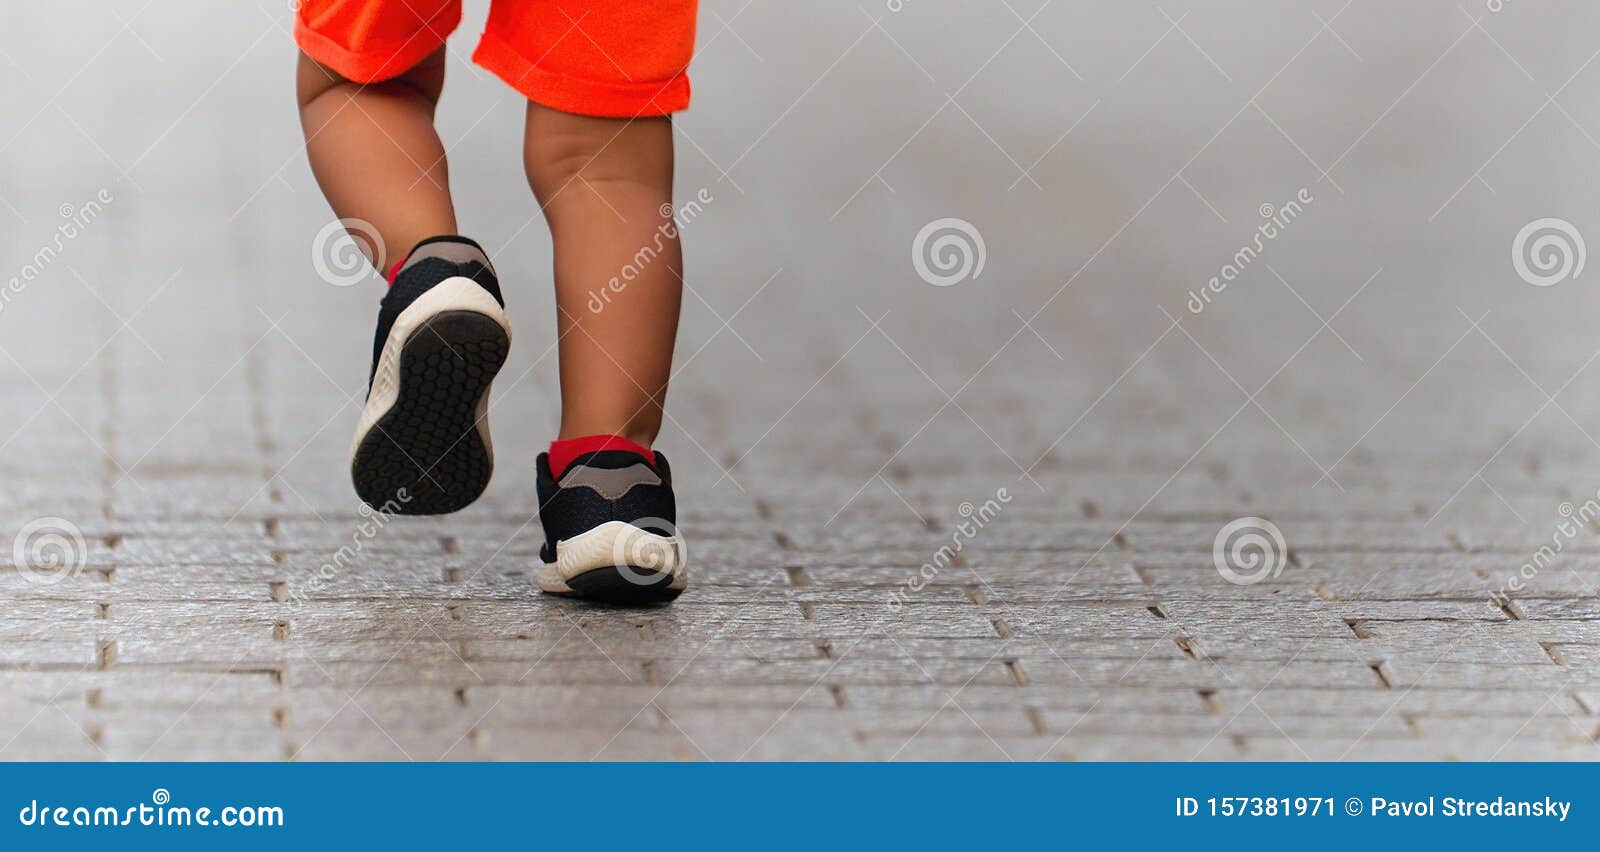 Звук бегущих ног читать. Игра про ребенка в бегунках. Ноги бегут по дороге в носках черных. Ребенок пробегает между ног. Ноги у бегунов колесо.